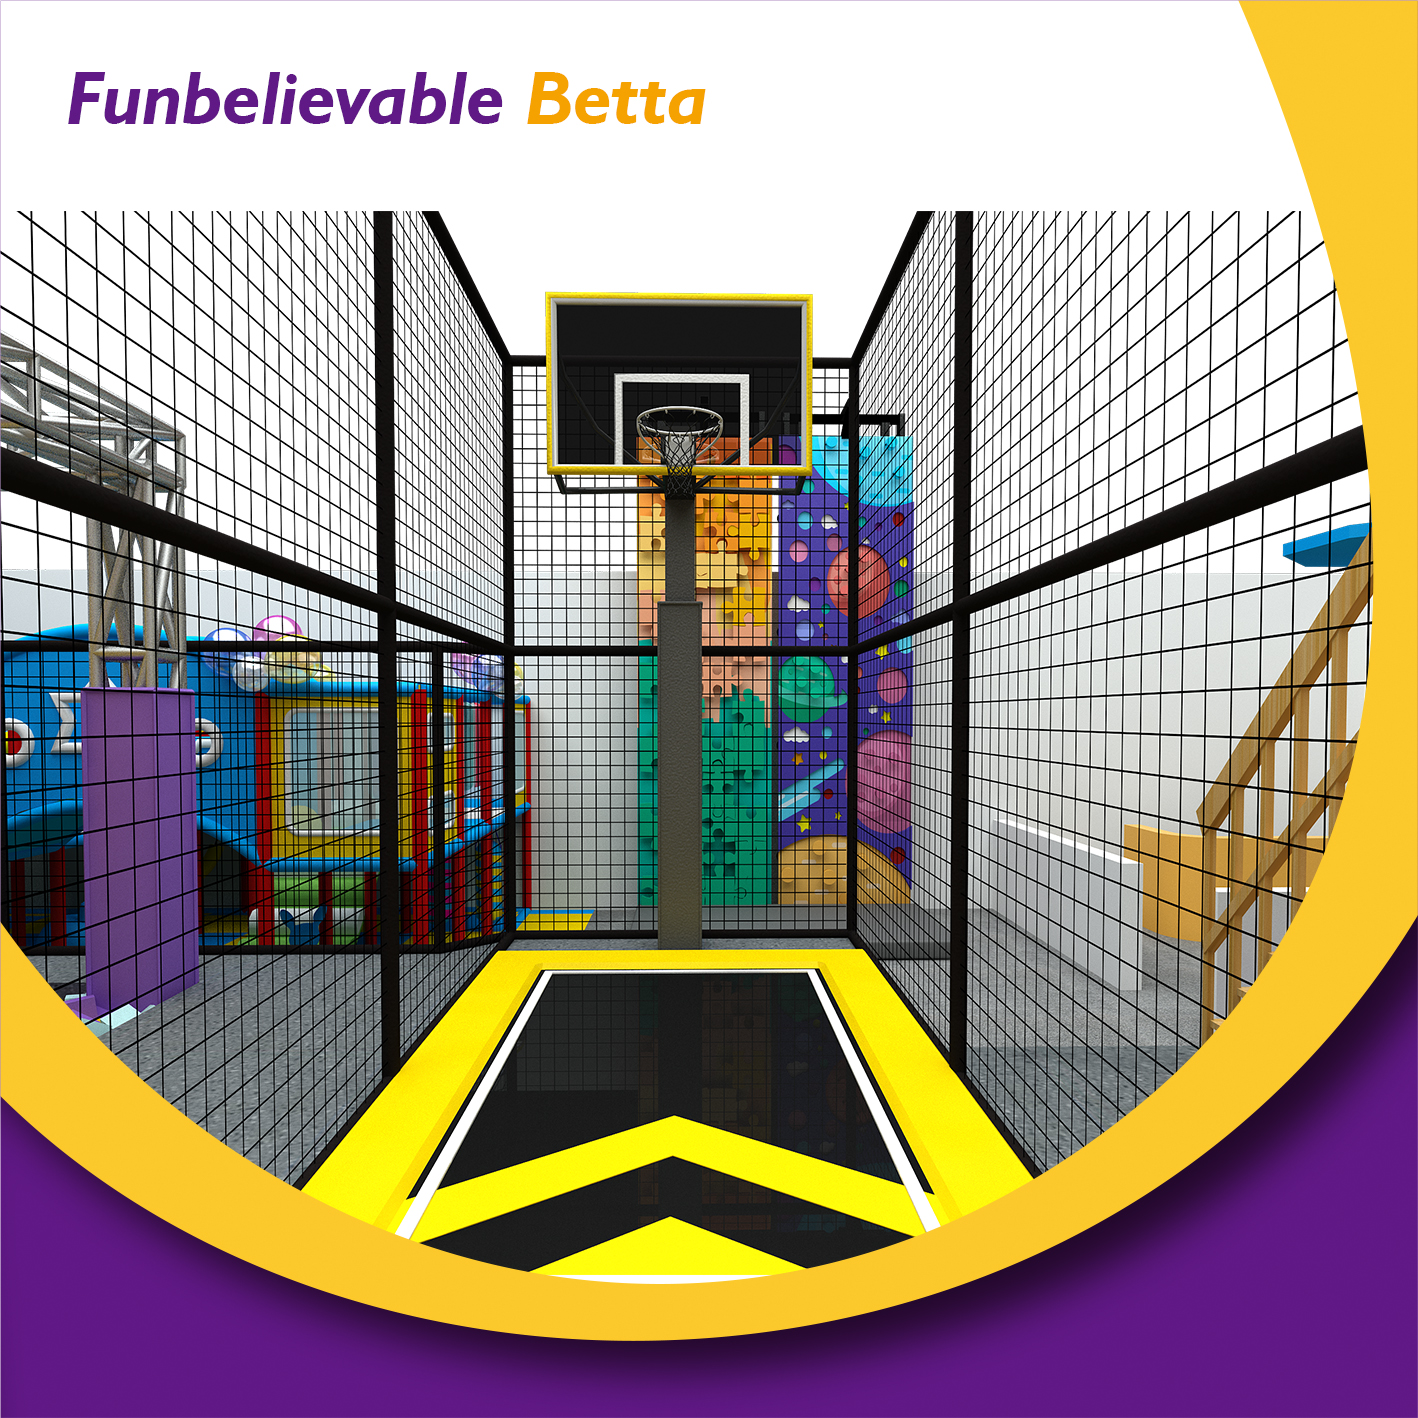 Bettaplay indoor adventure Ninja course for kids playing indoor playground equipment